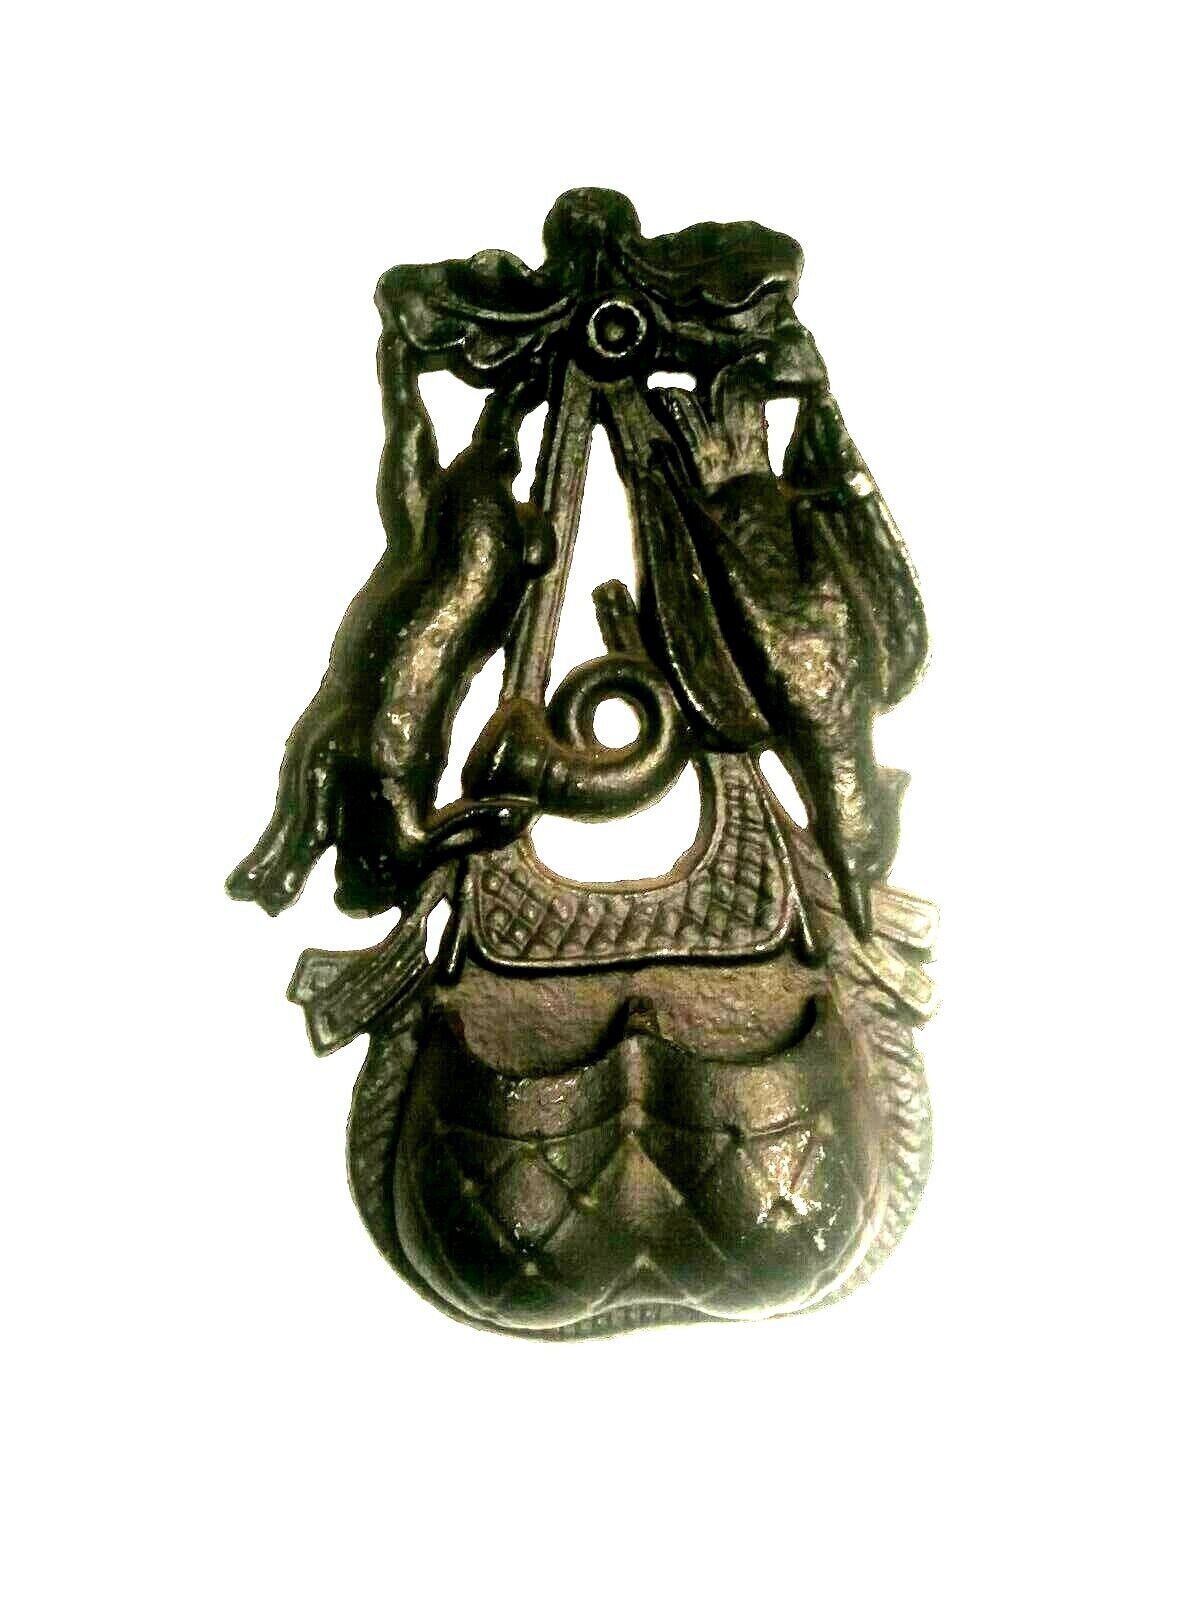 Antique Cast Iron Fireplace Figural Match Holder Safe 2 Well Rabbit Bird Horn